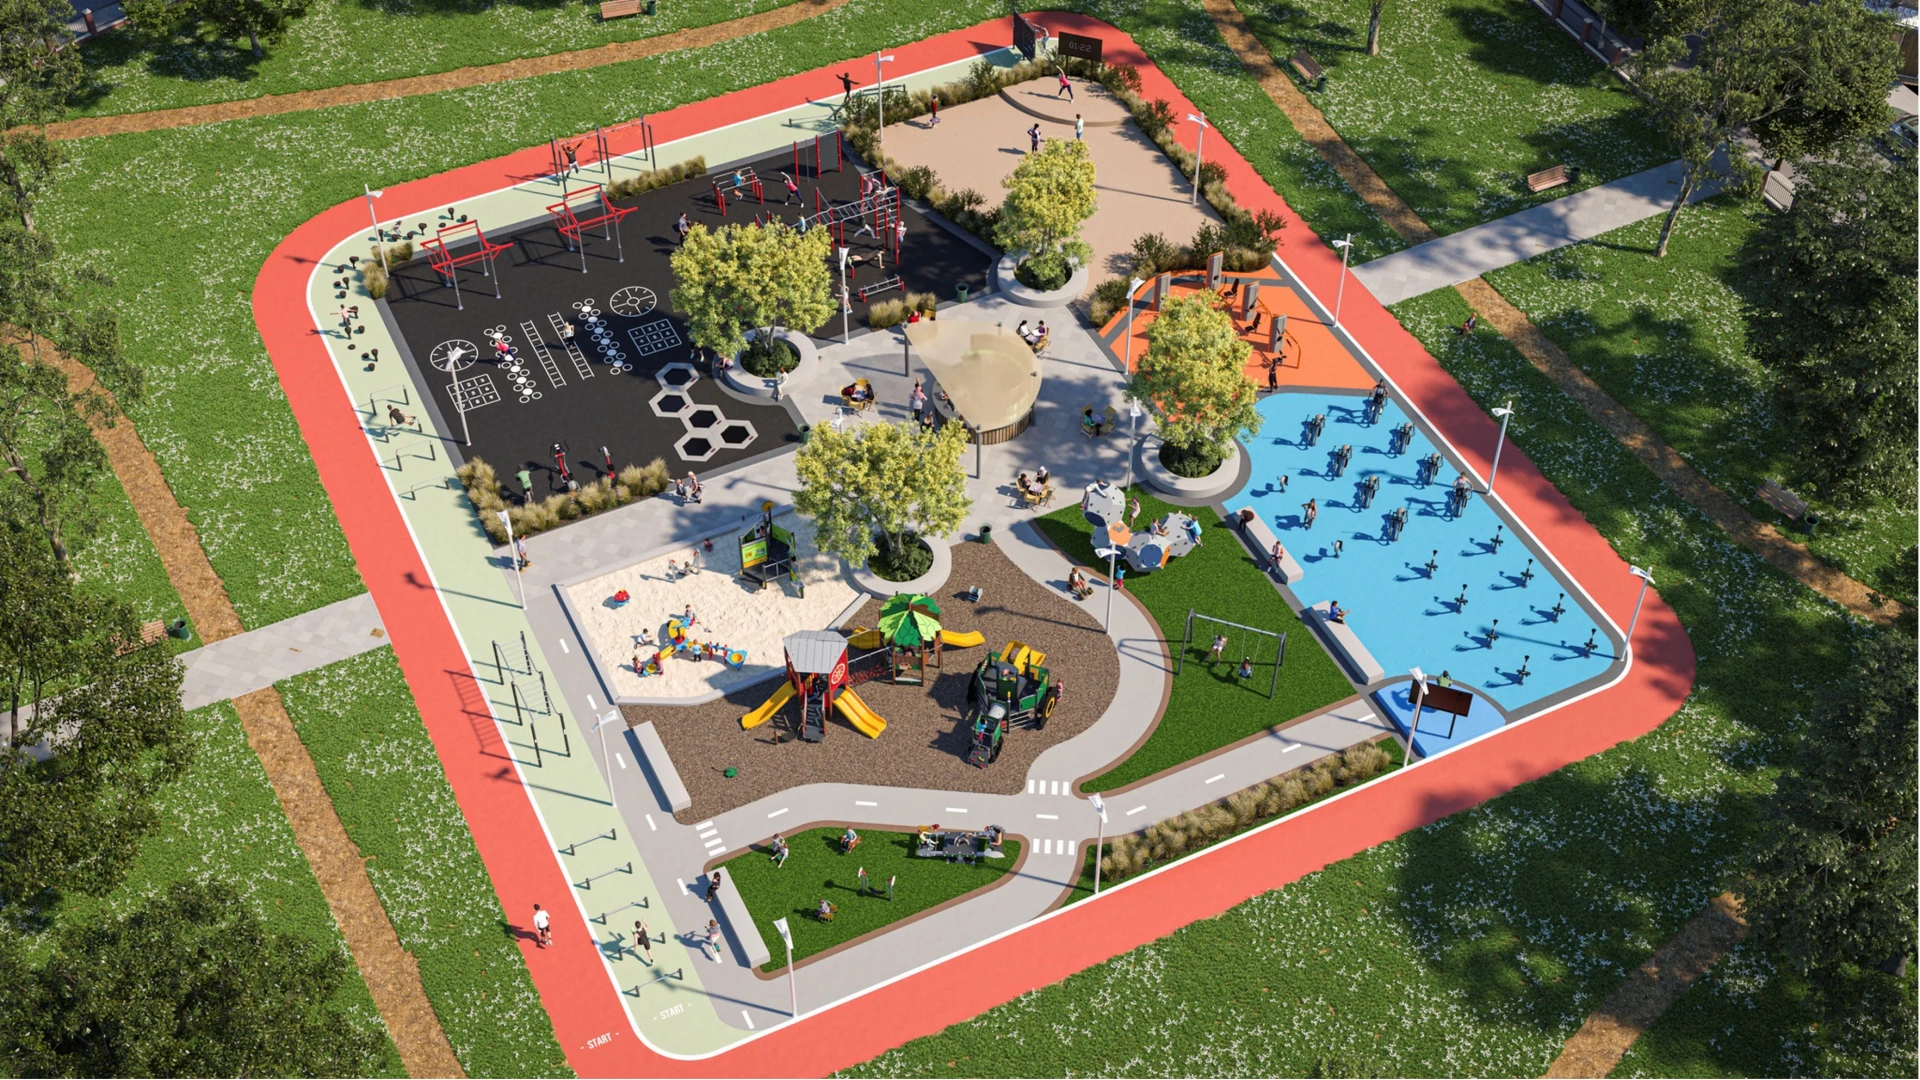 Vista aerea di un parco giochi e di un'area fitness all'aperto in un parco.